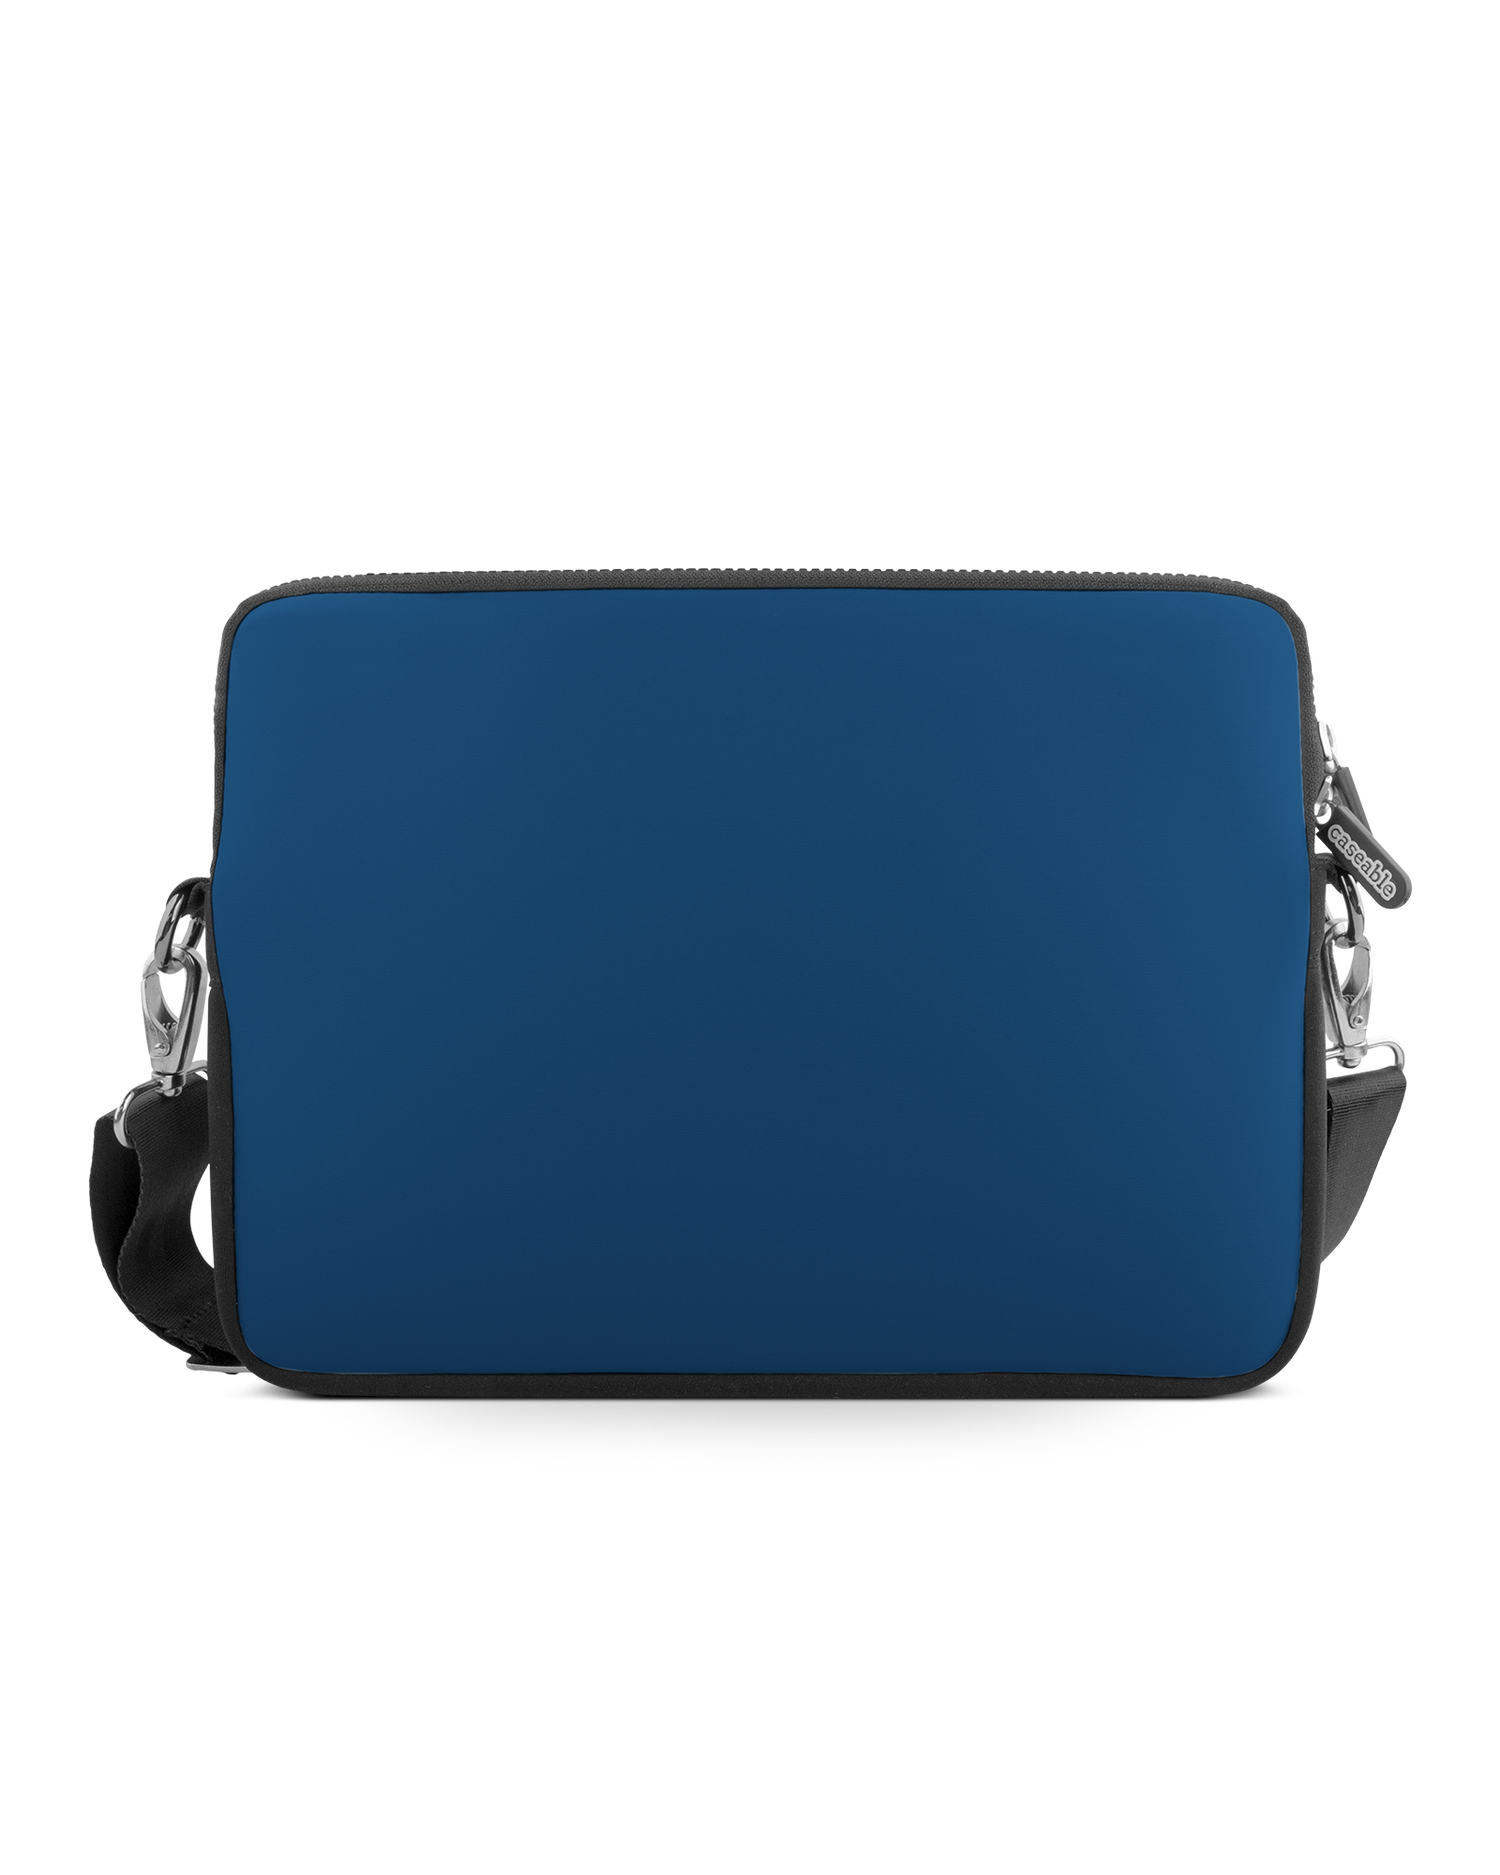 CLASSIC BLUE Premium Laptoptasche 17 Zoll: Vorderansicht